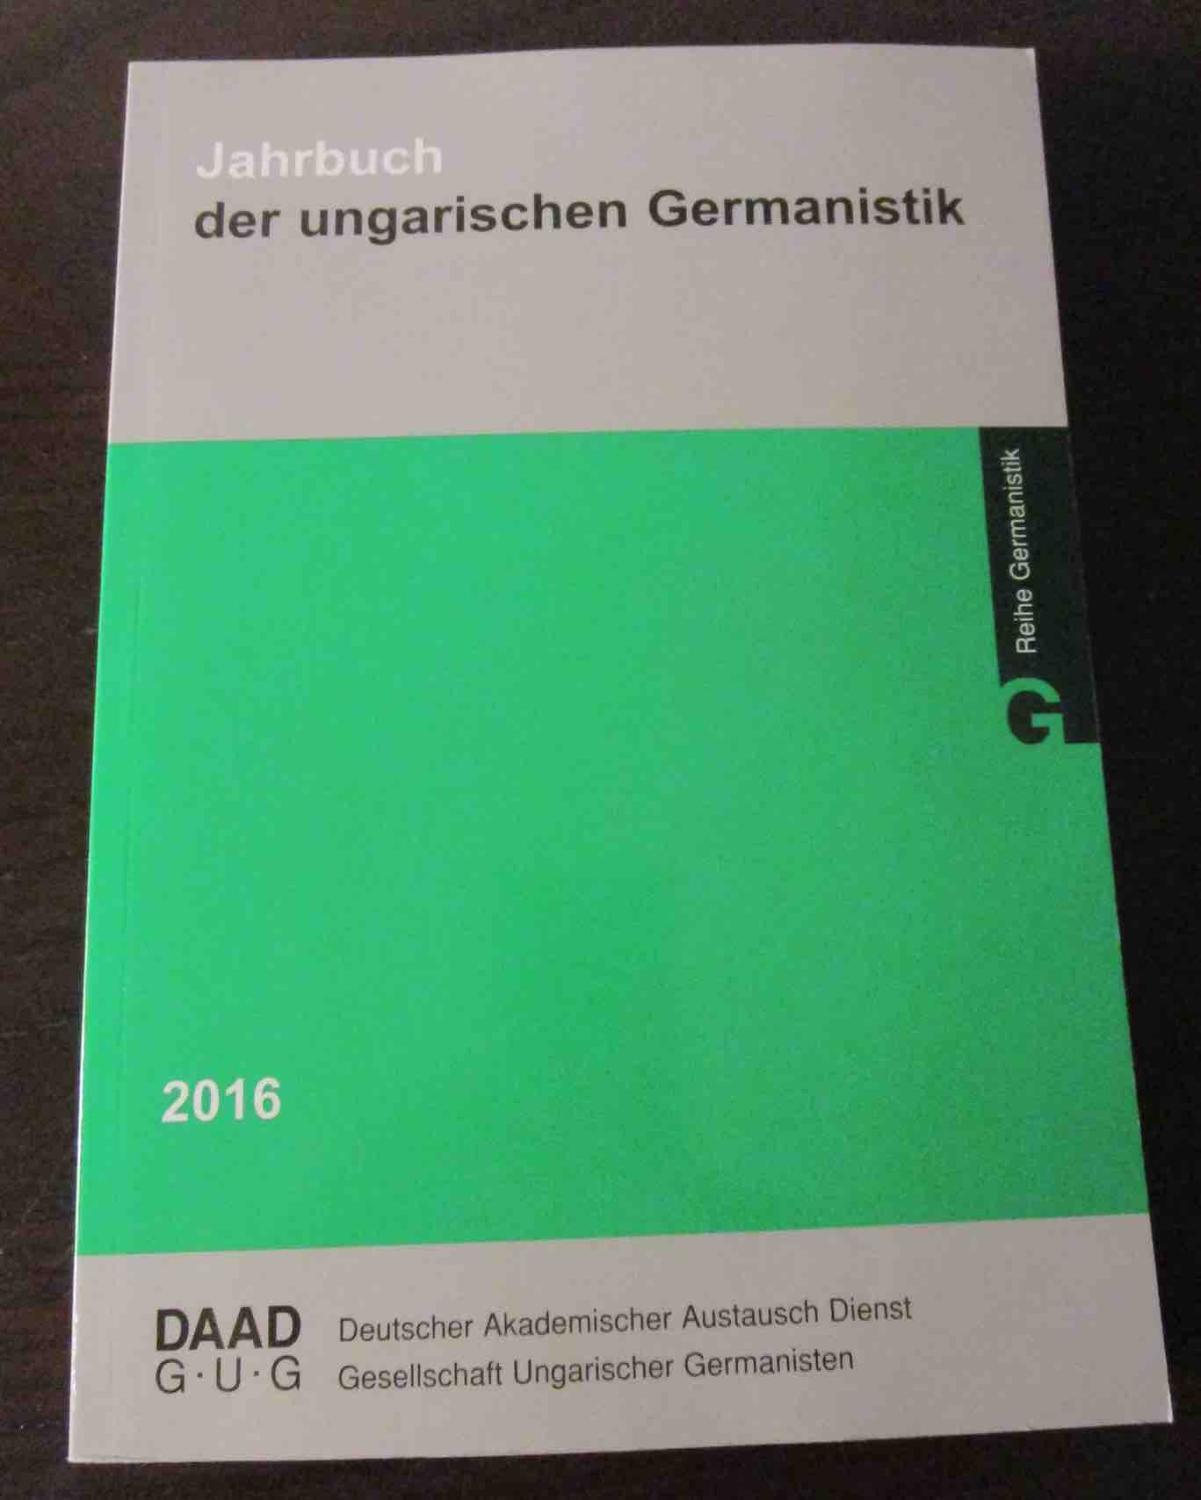 Jahrbuch der ungarischen Germanistik 2016. - Vortisch, Verena u. Zoltan Szendi - Gesellschaft ungarischer Germanisten (Hrsg.)